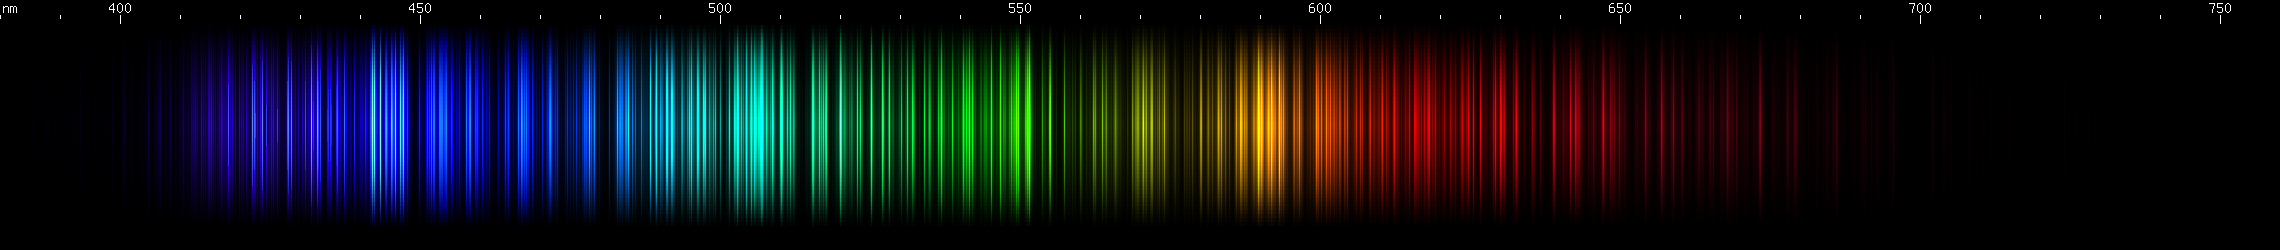 Spectral Lines of Samarium